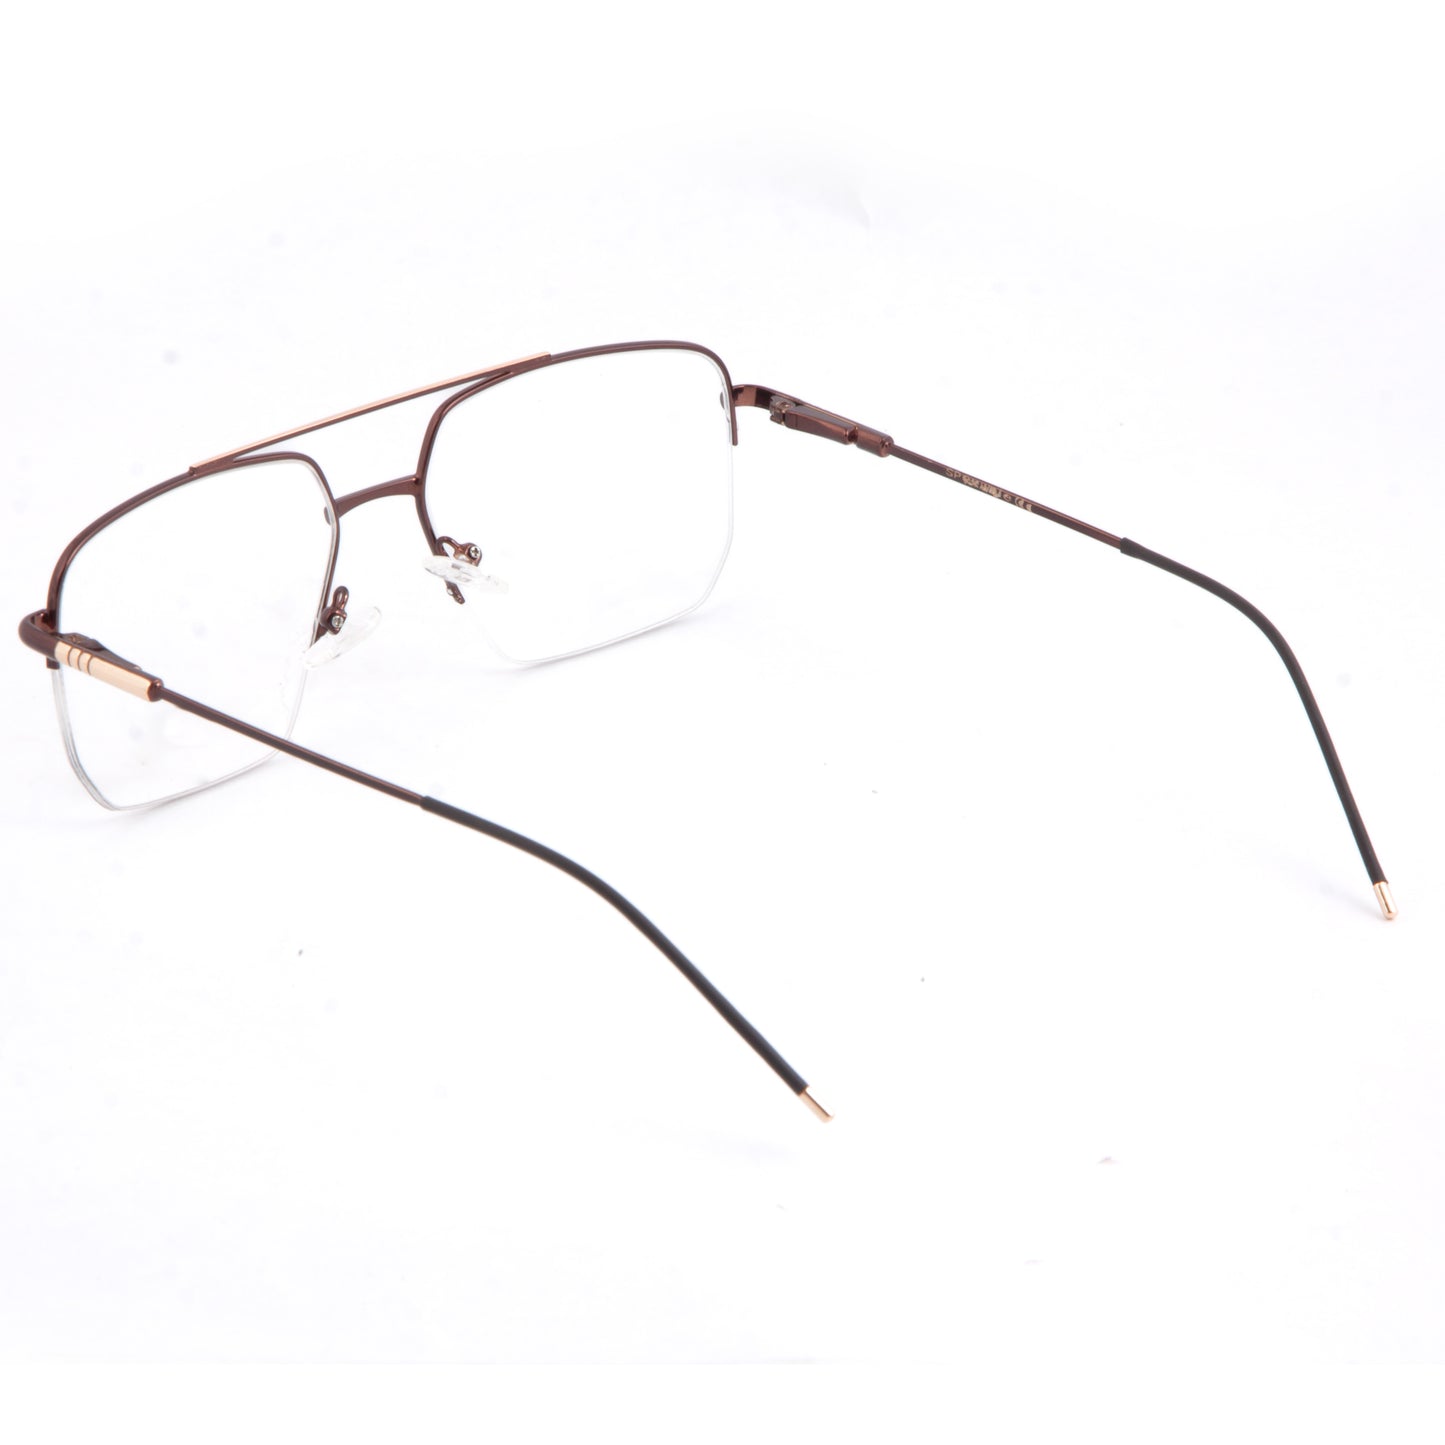 Spexwale Wayfarer Half-Rim Eyeglasses for Men & Women (224116)